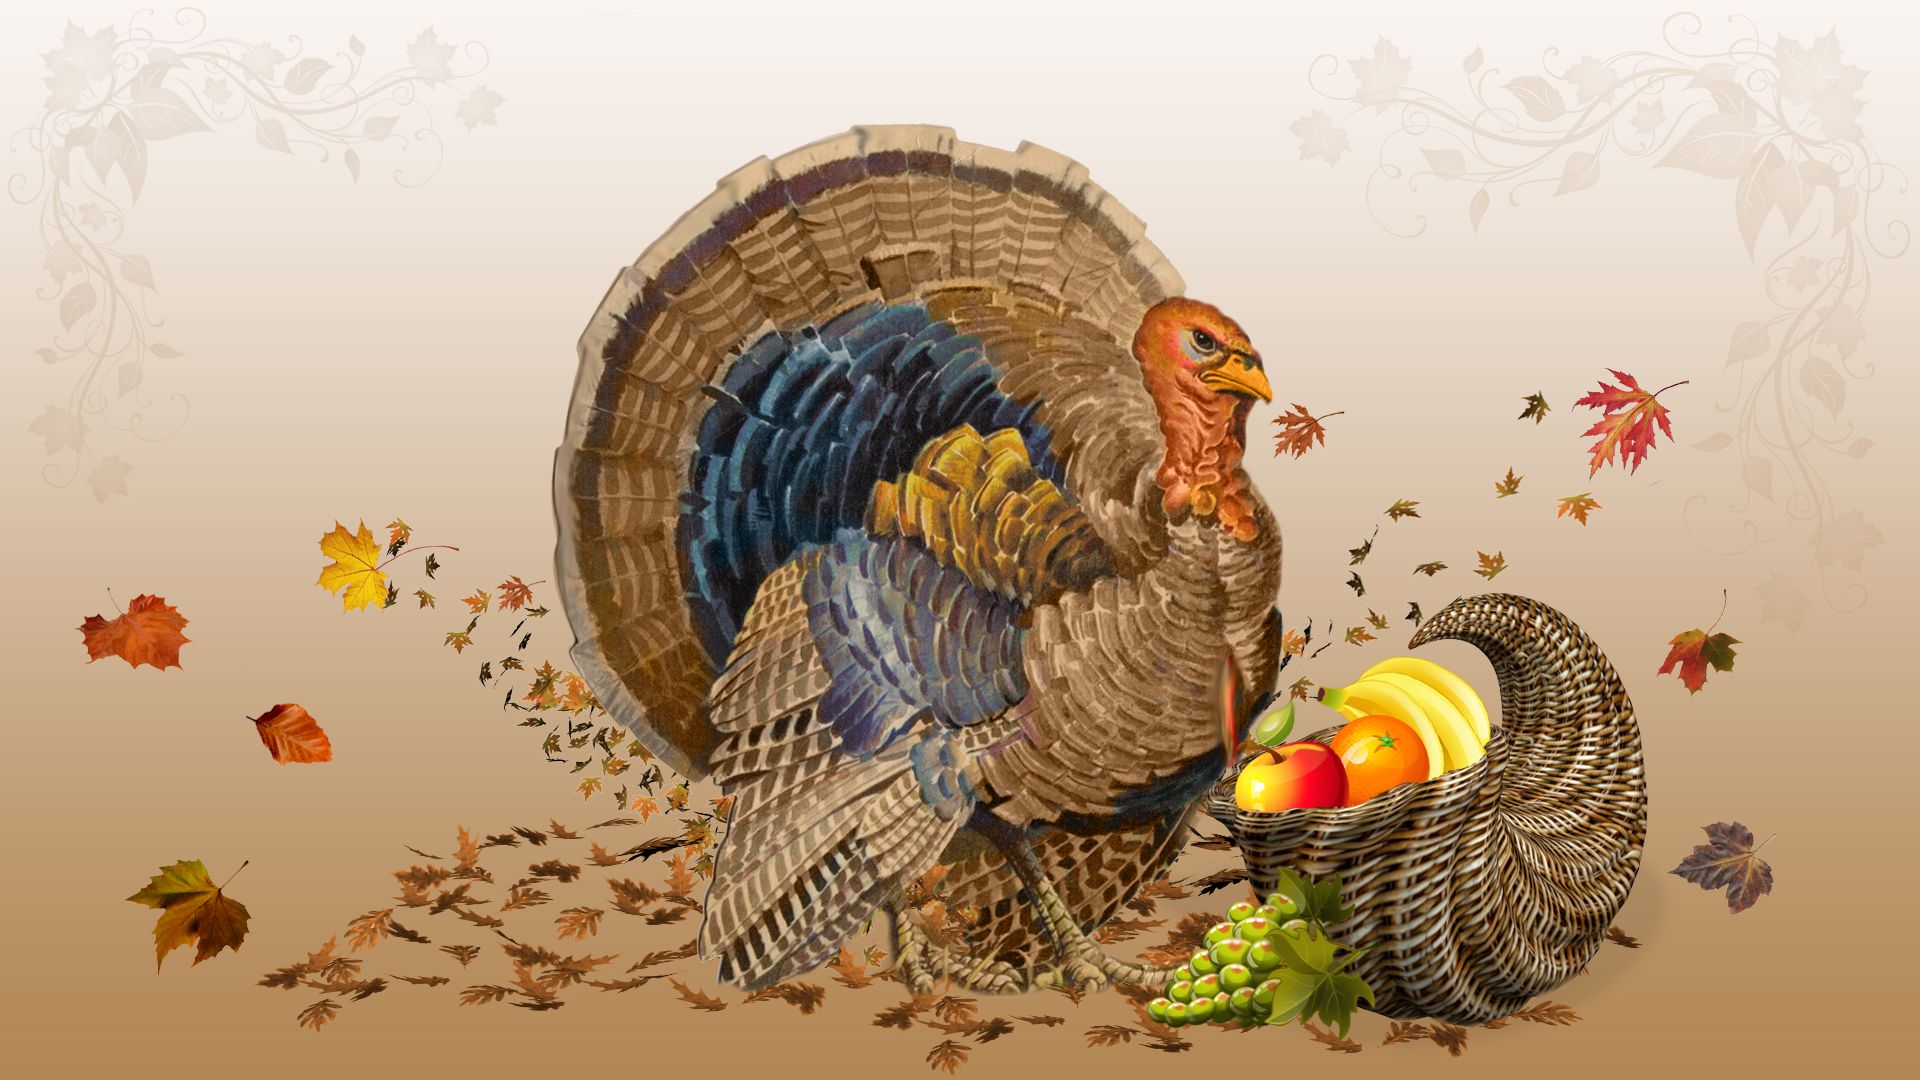 Turkey Wallpaper. Turkey Wallpaper, Thanksgiving Turkey Wallpaper and Funny Turkey Wallpaper